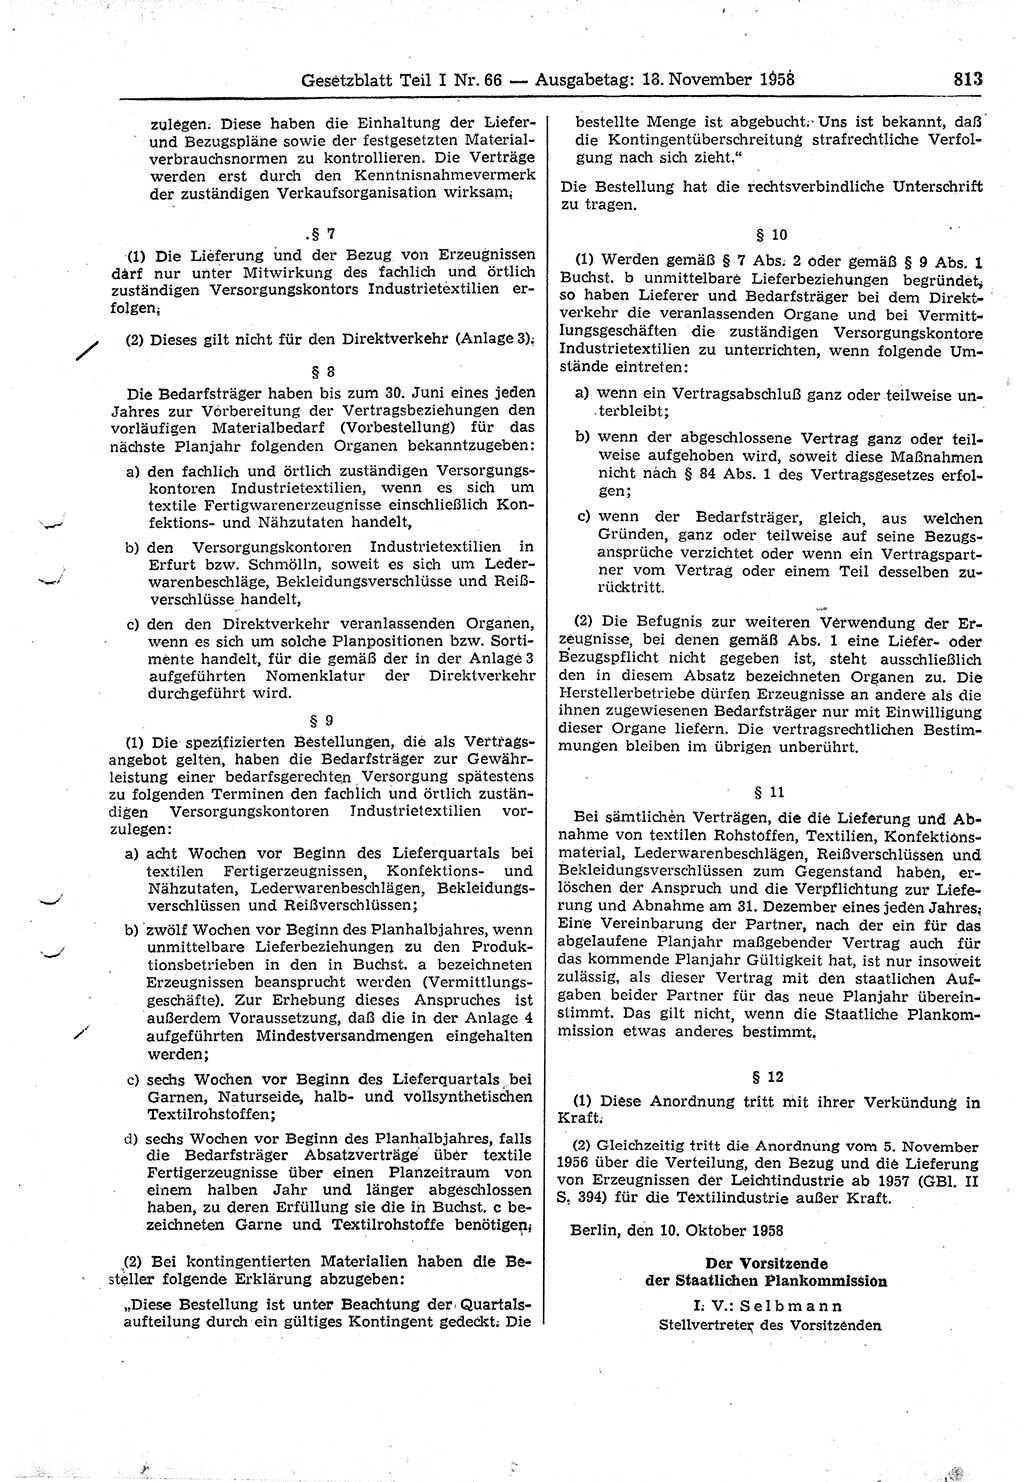 Gesetzblatt (GBl.) der Deutschen Demokratischen Republik (DDR) Teil Ⅰ 1958, Seite 813 (GBl. DDR Ⅰ 1958, S. 813)